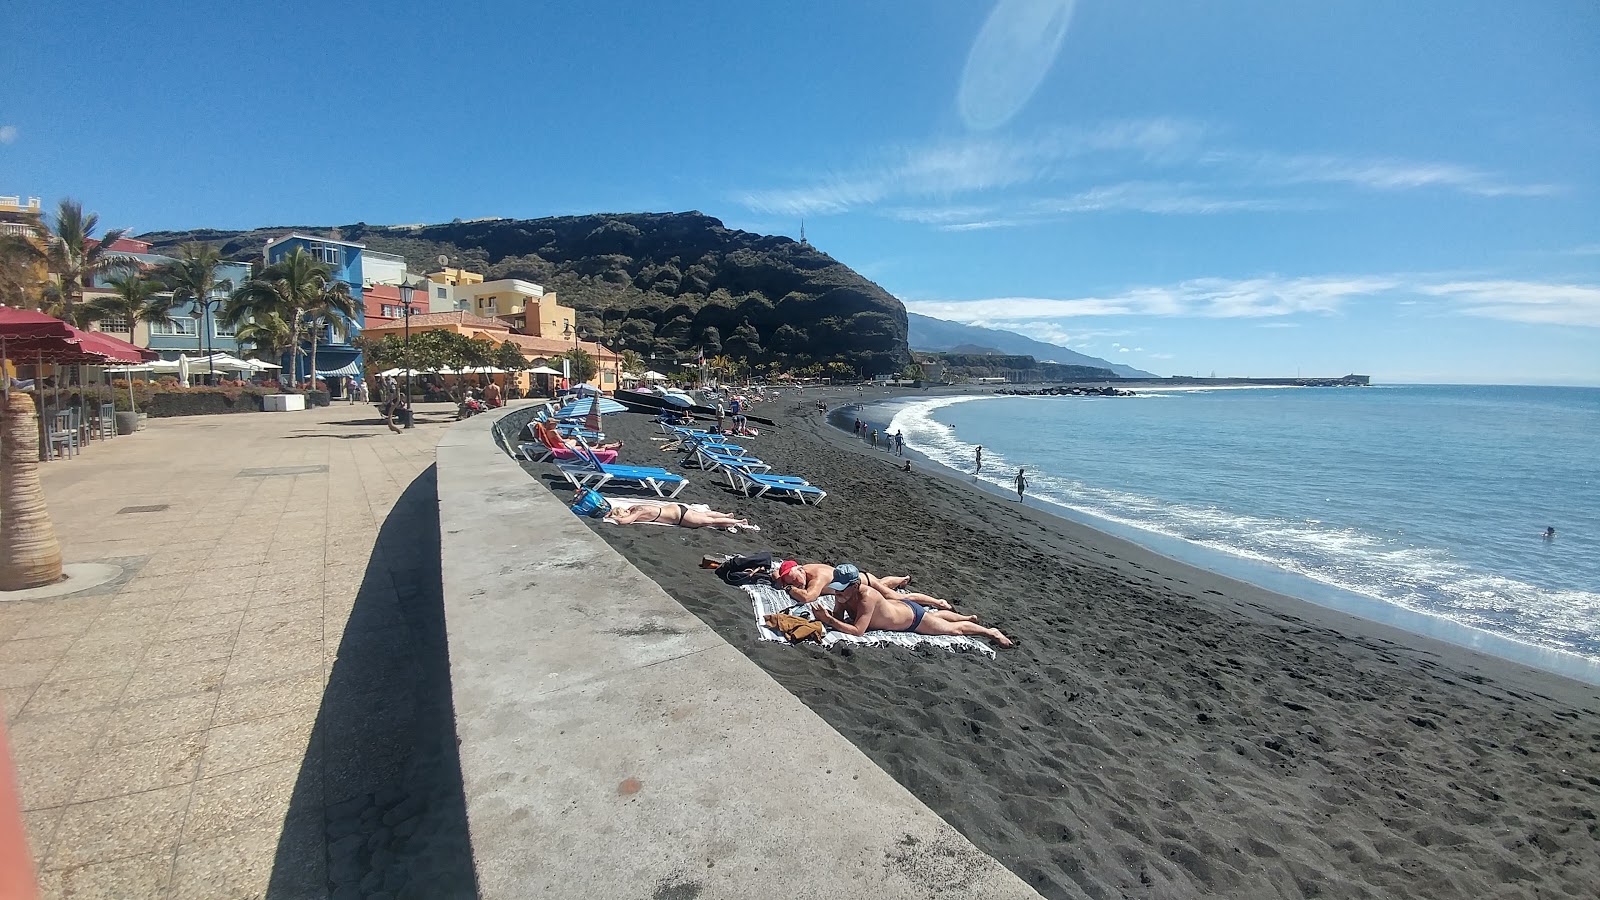 Puerto de Tazacorte'in fotoğrafı çok temiz temizlik seviyesi ile